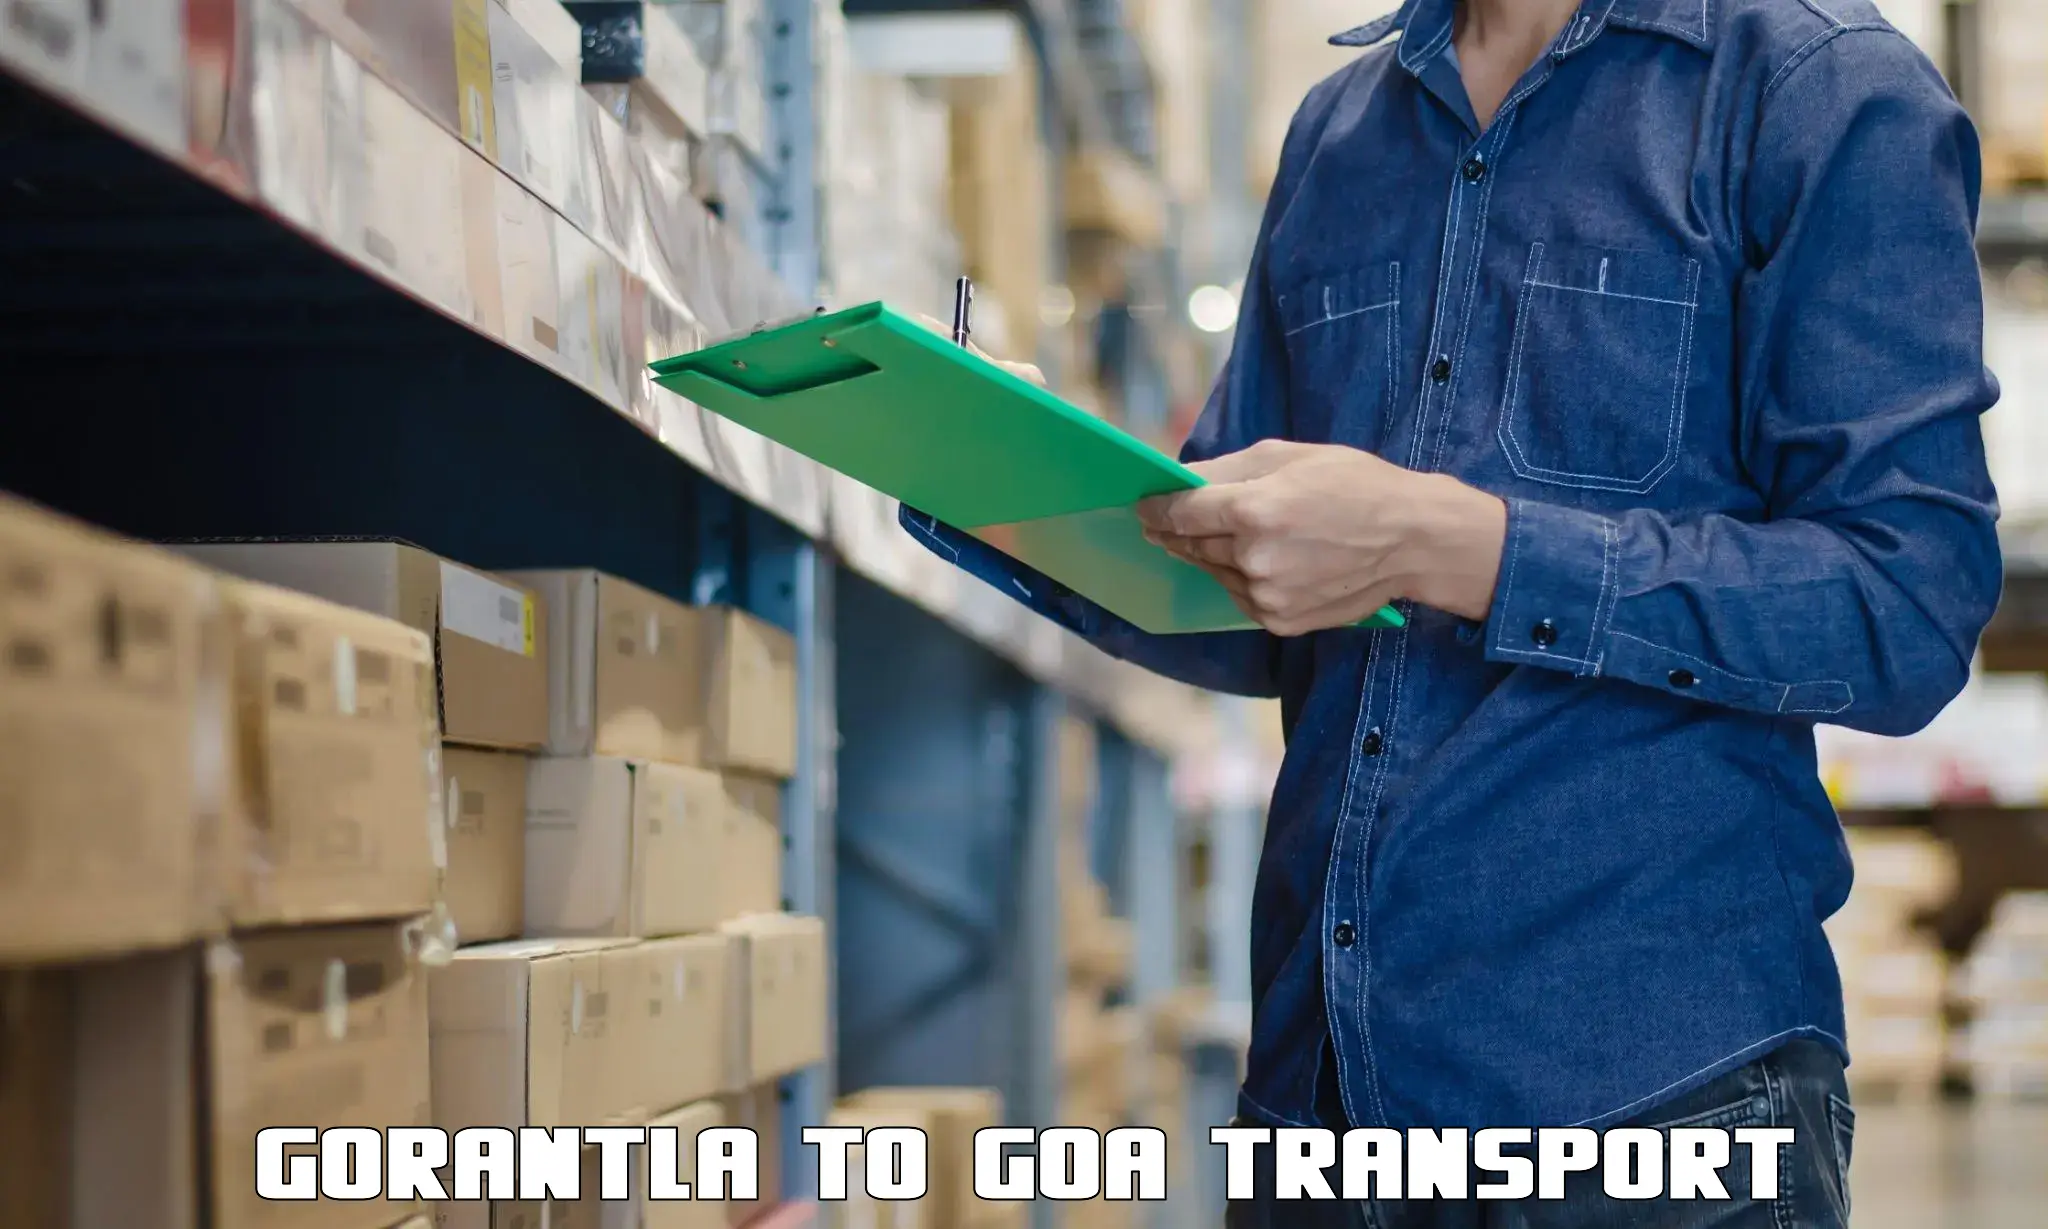 Nearest transport service Gorantla to IIT Goa